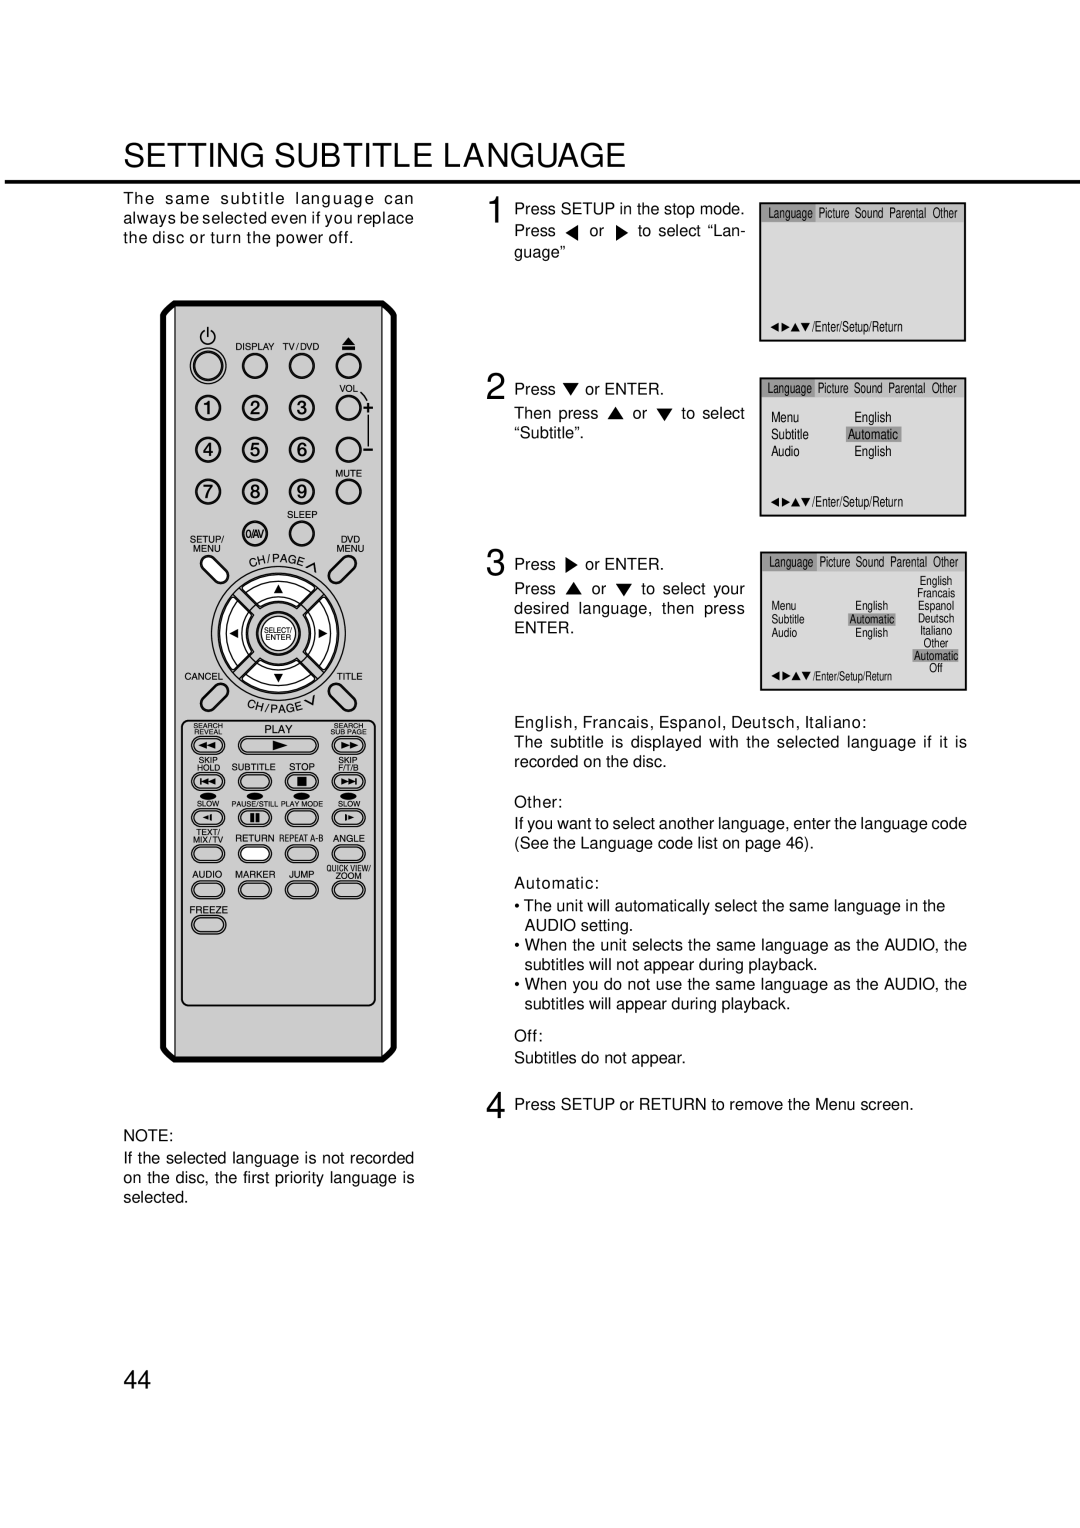 Orion 14LD manual Setting Subtitle Language, Automatic 